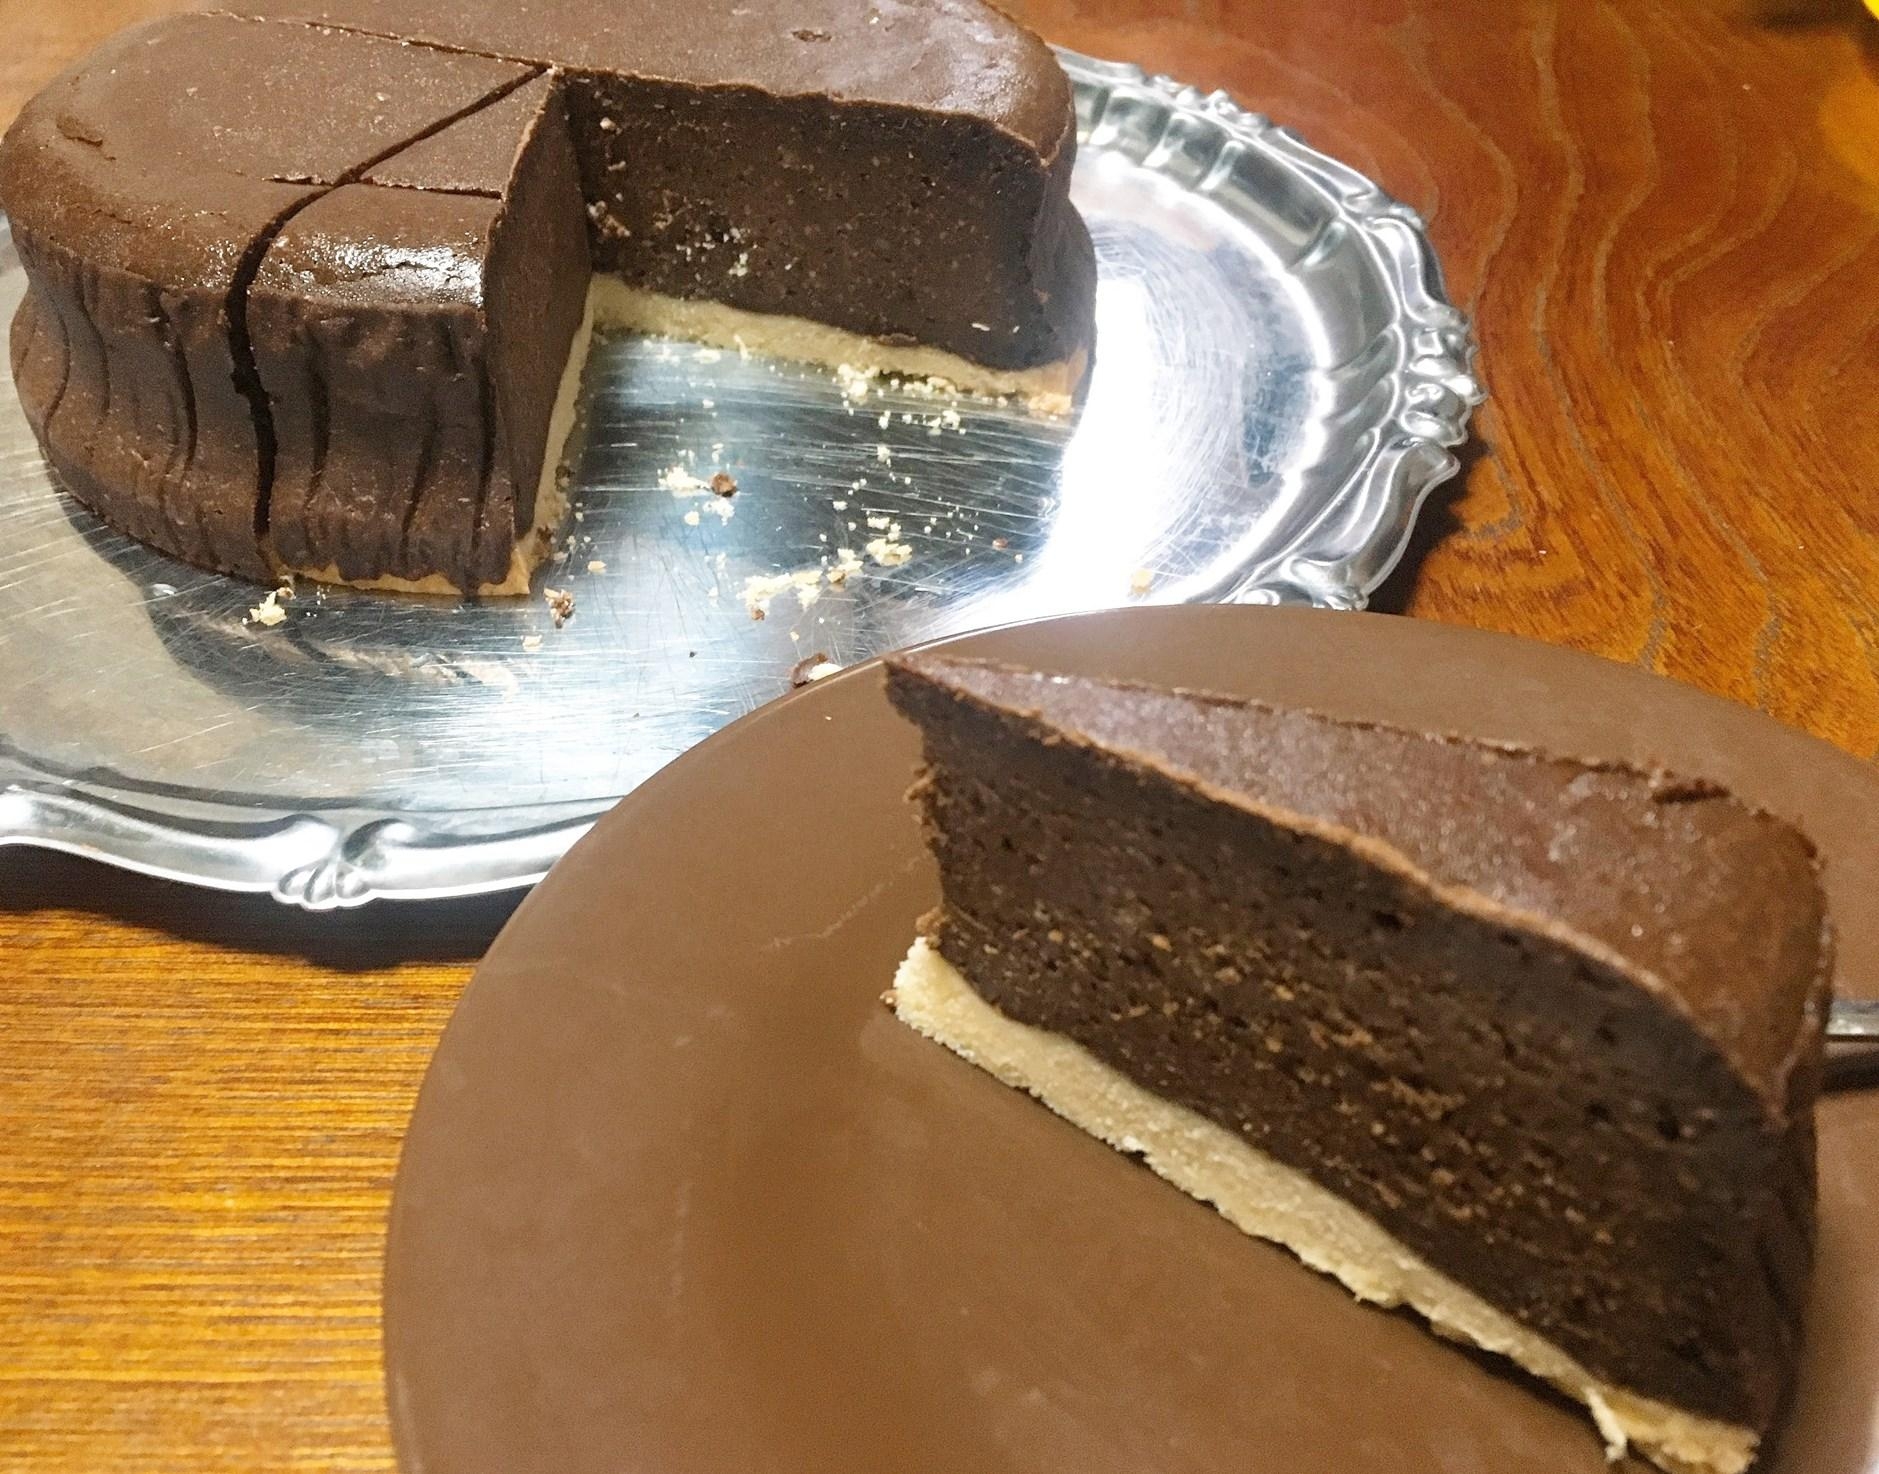 2021バレンタインチョコレートチーズケーキ